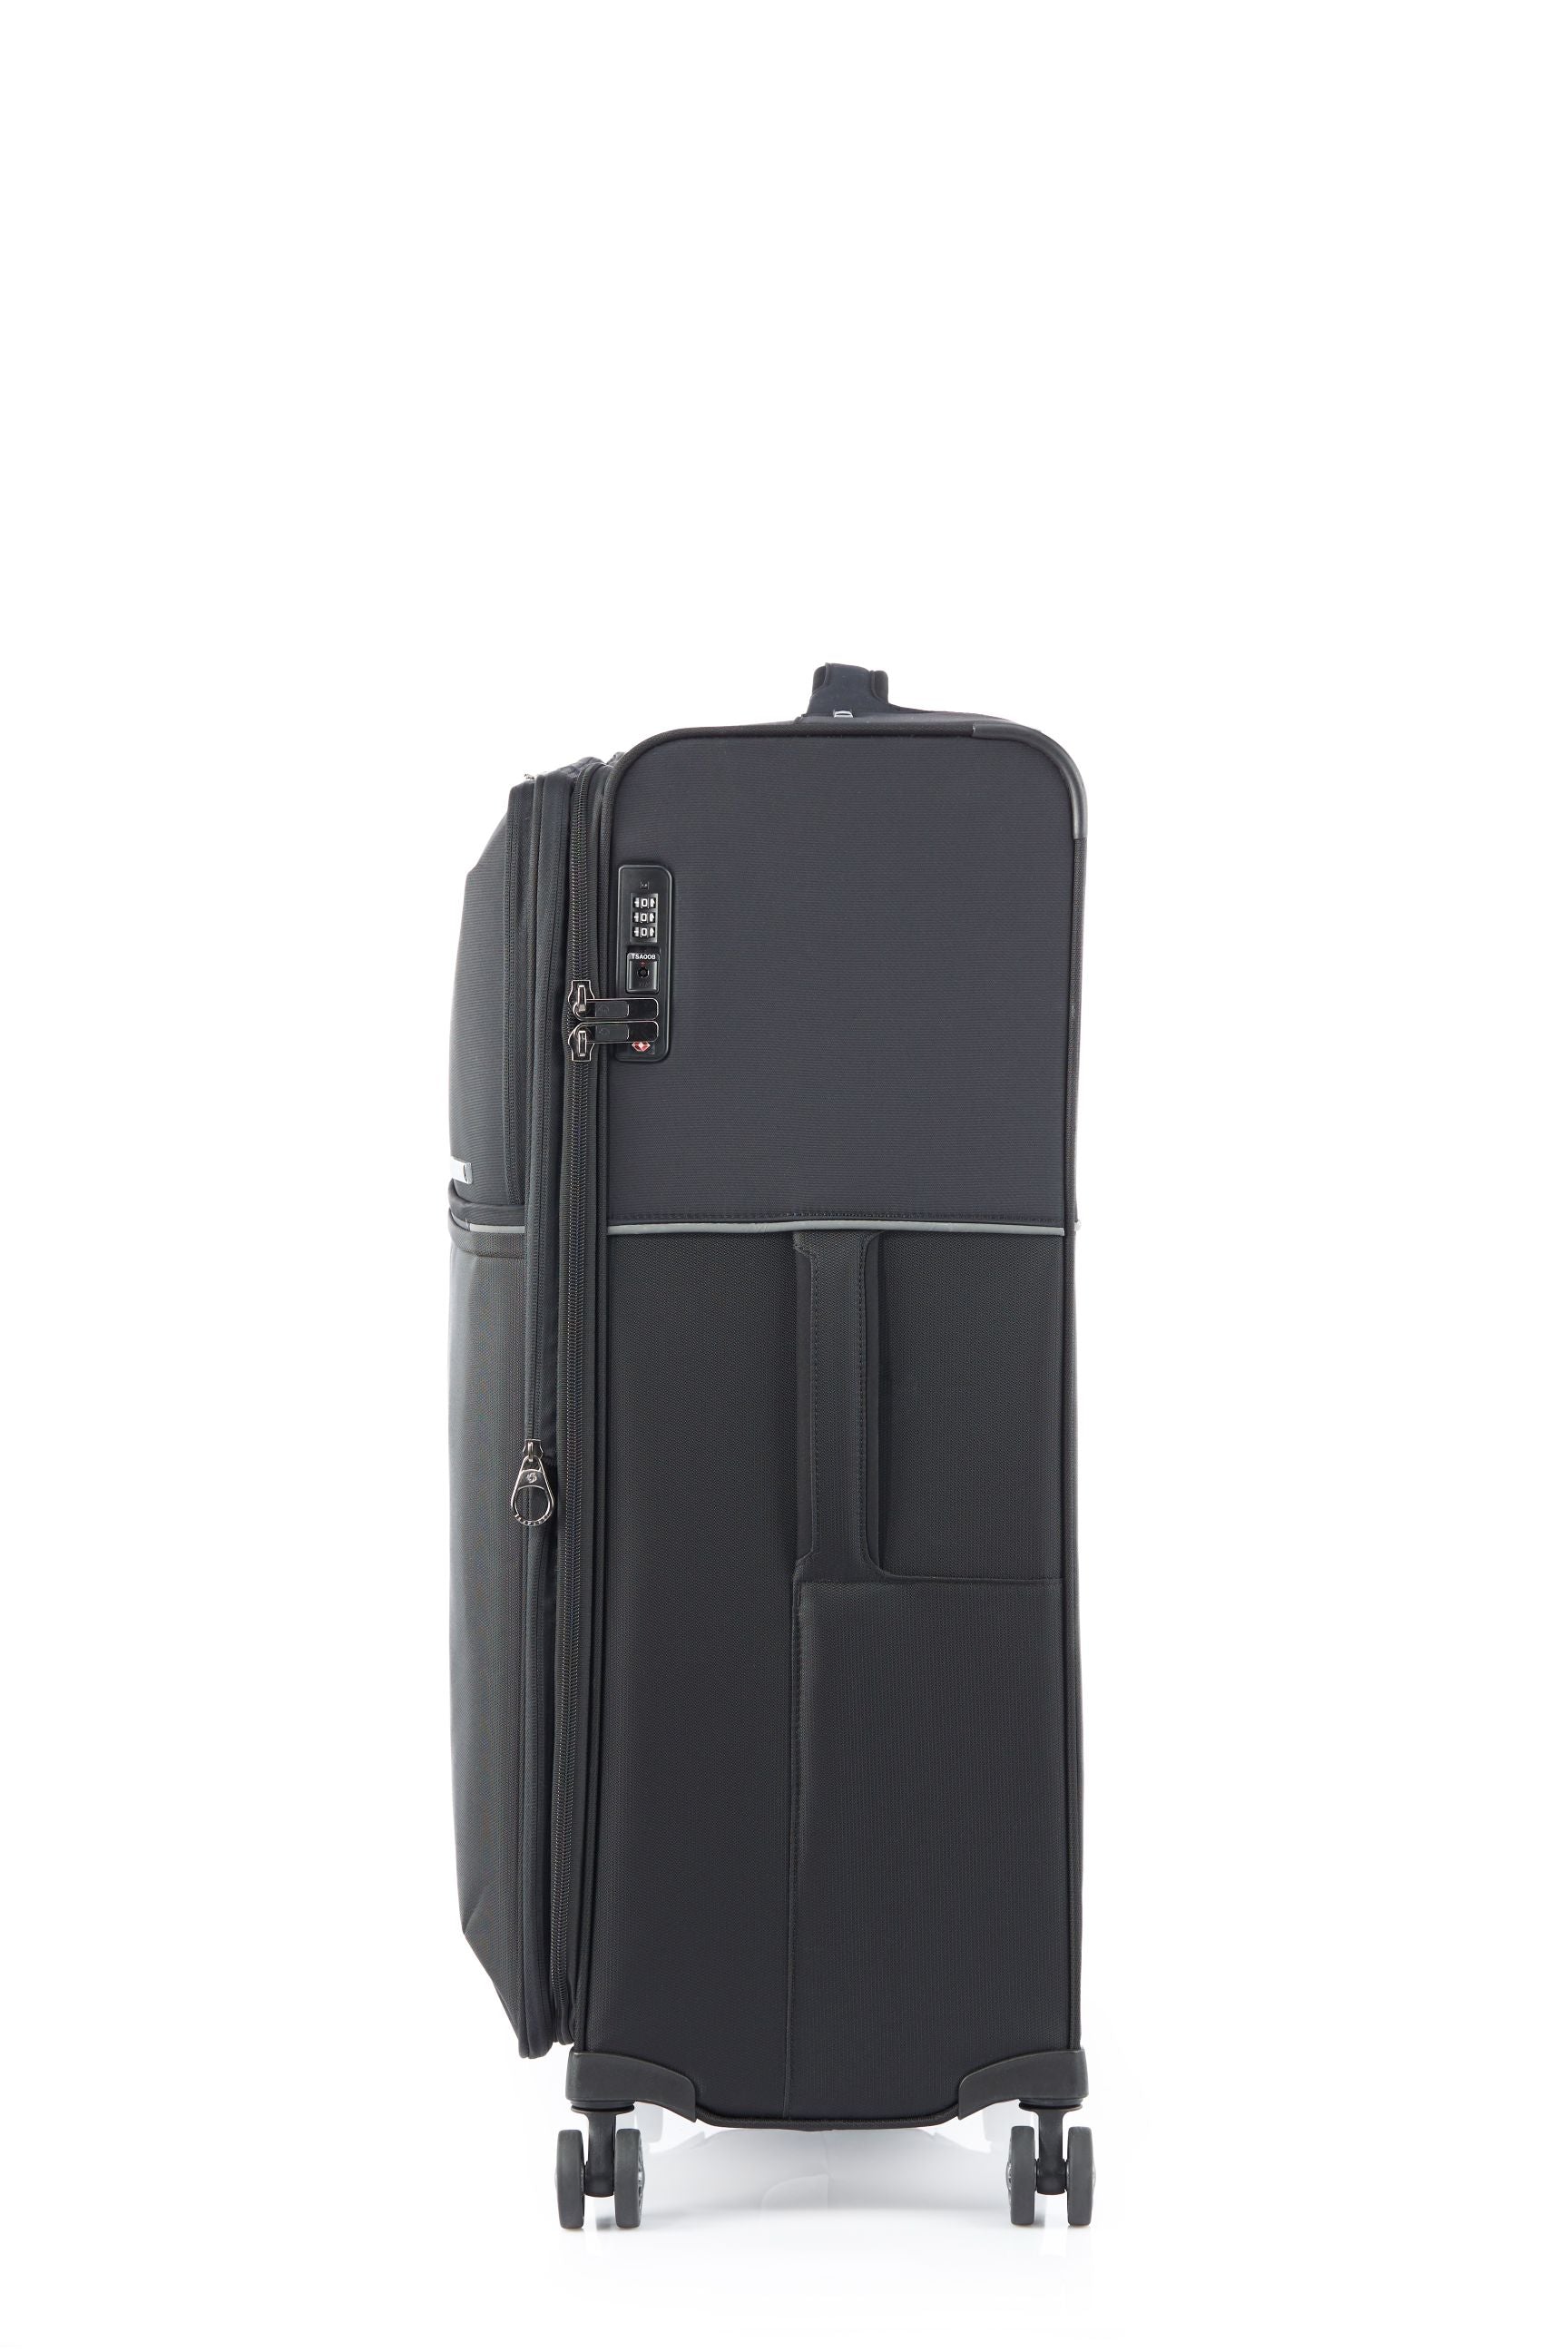 Samsonite - 73HR 78cm Large Suitcase - Black-4